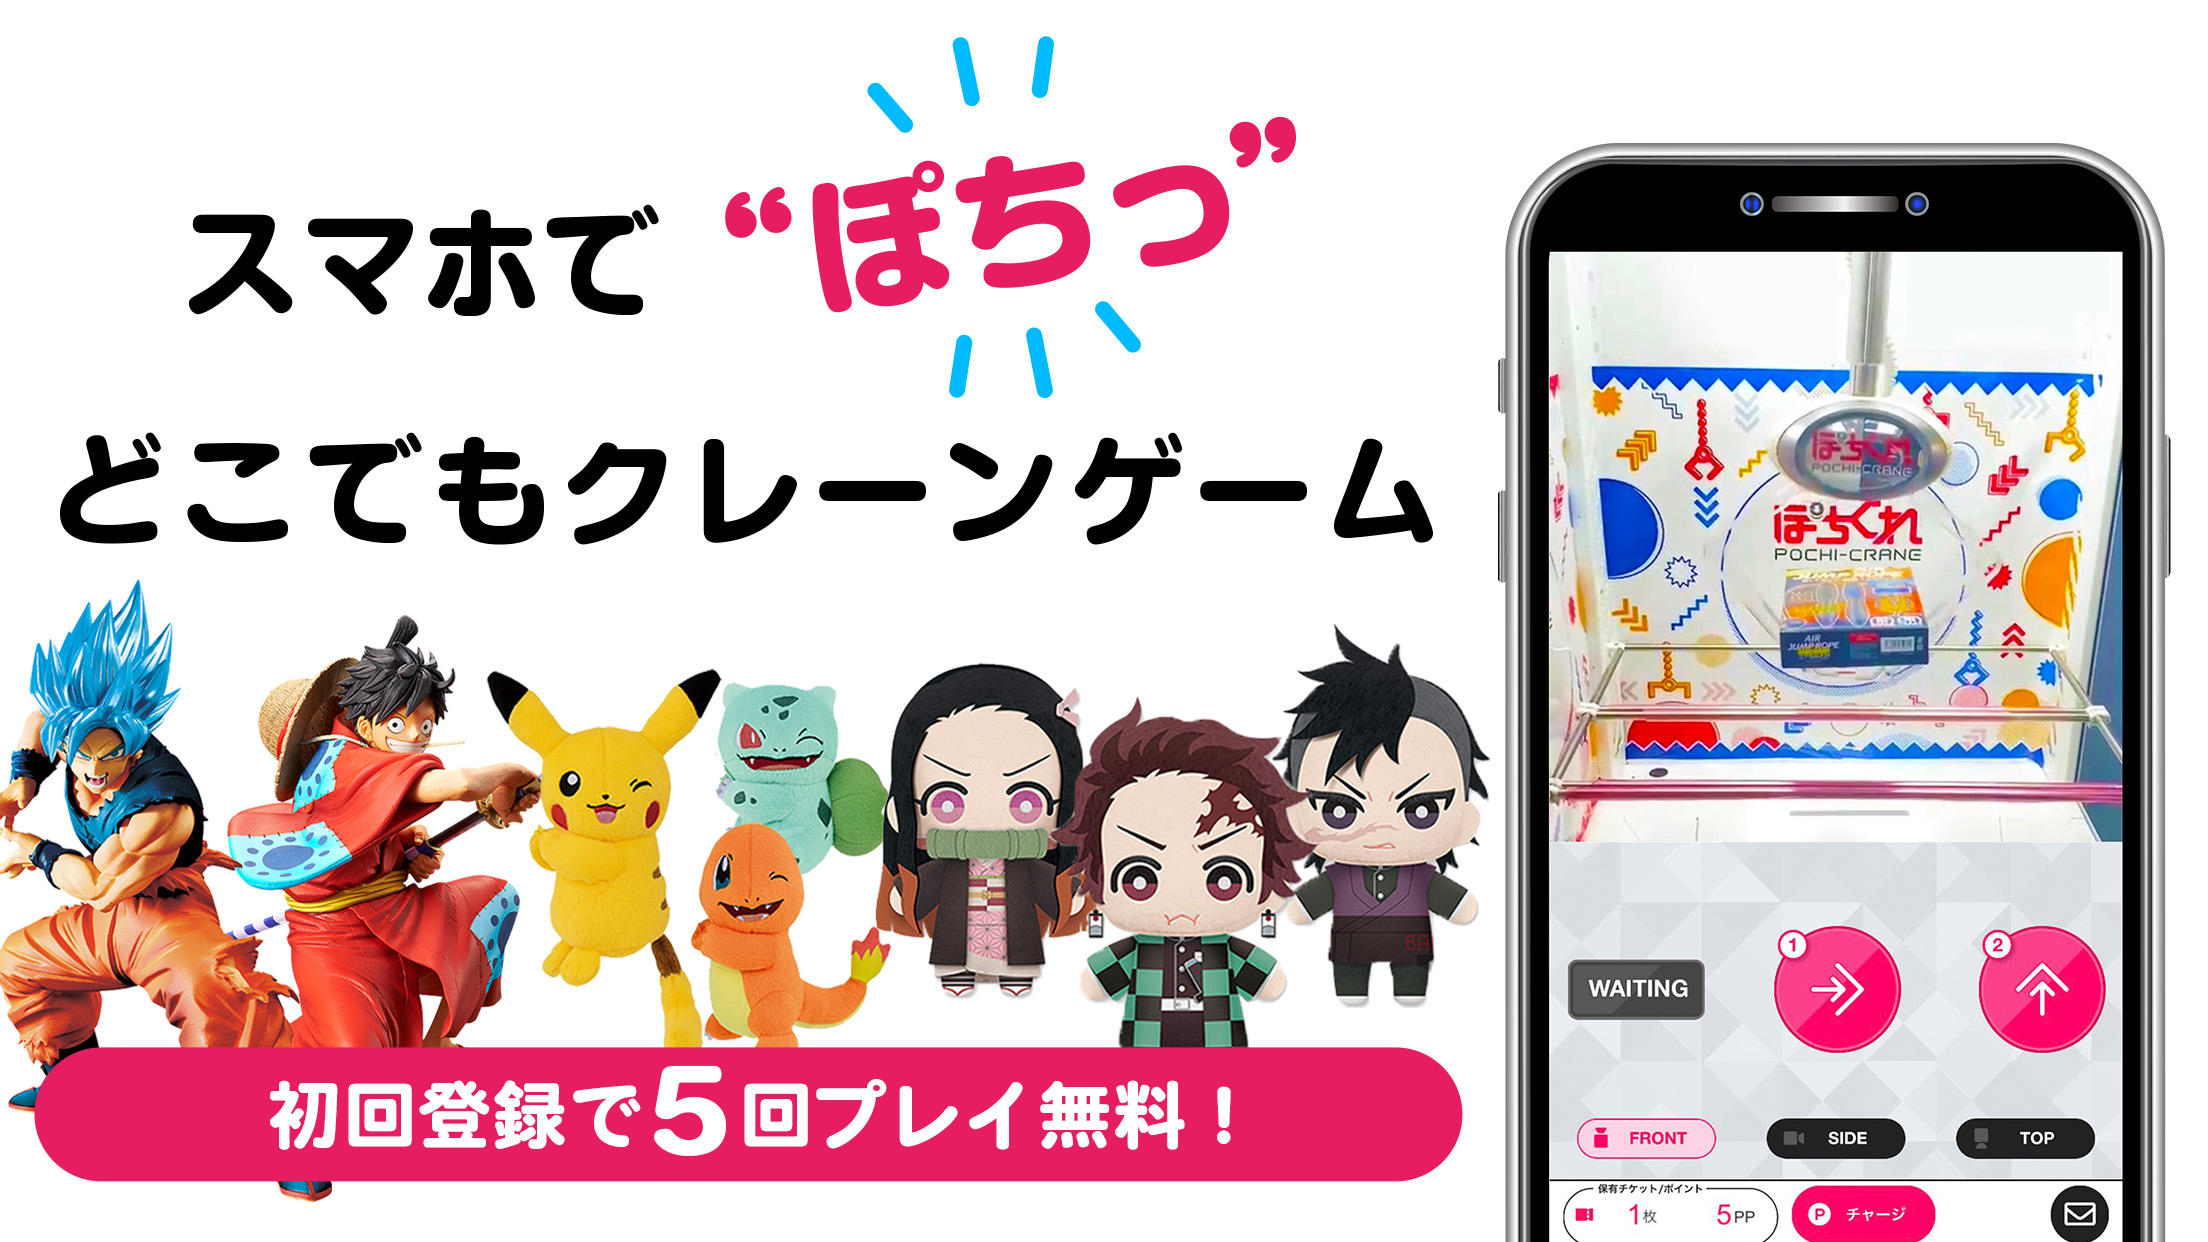 Screenshot 1 of "Pochikure" Permainan kren sebenar dengan telefon pintar 3.5.0